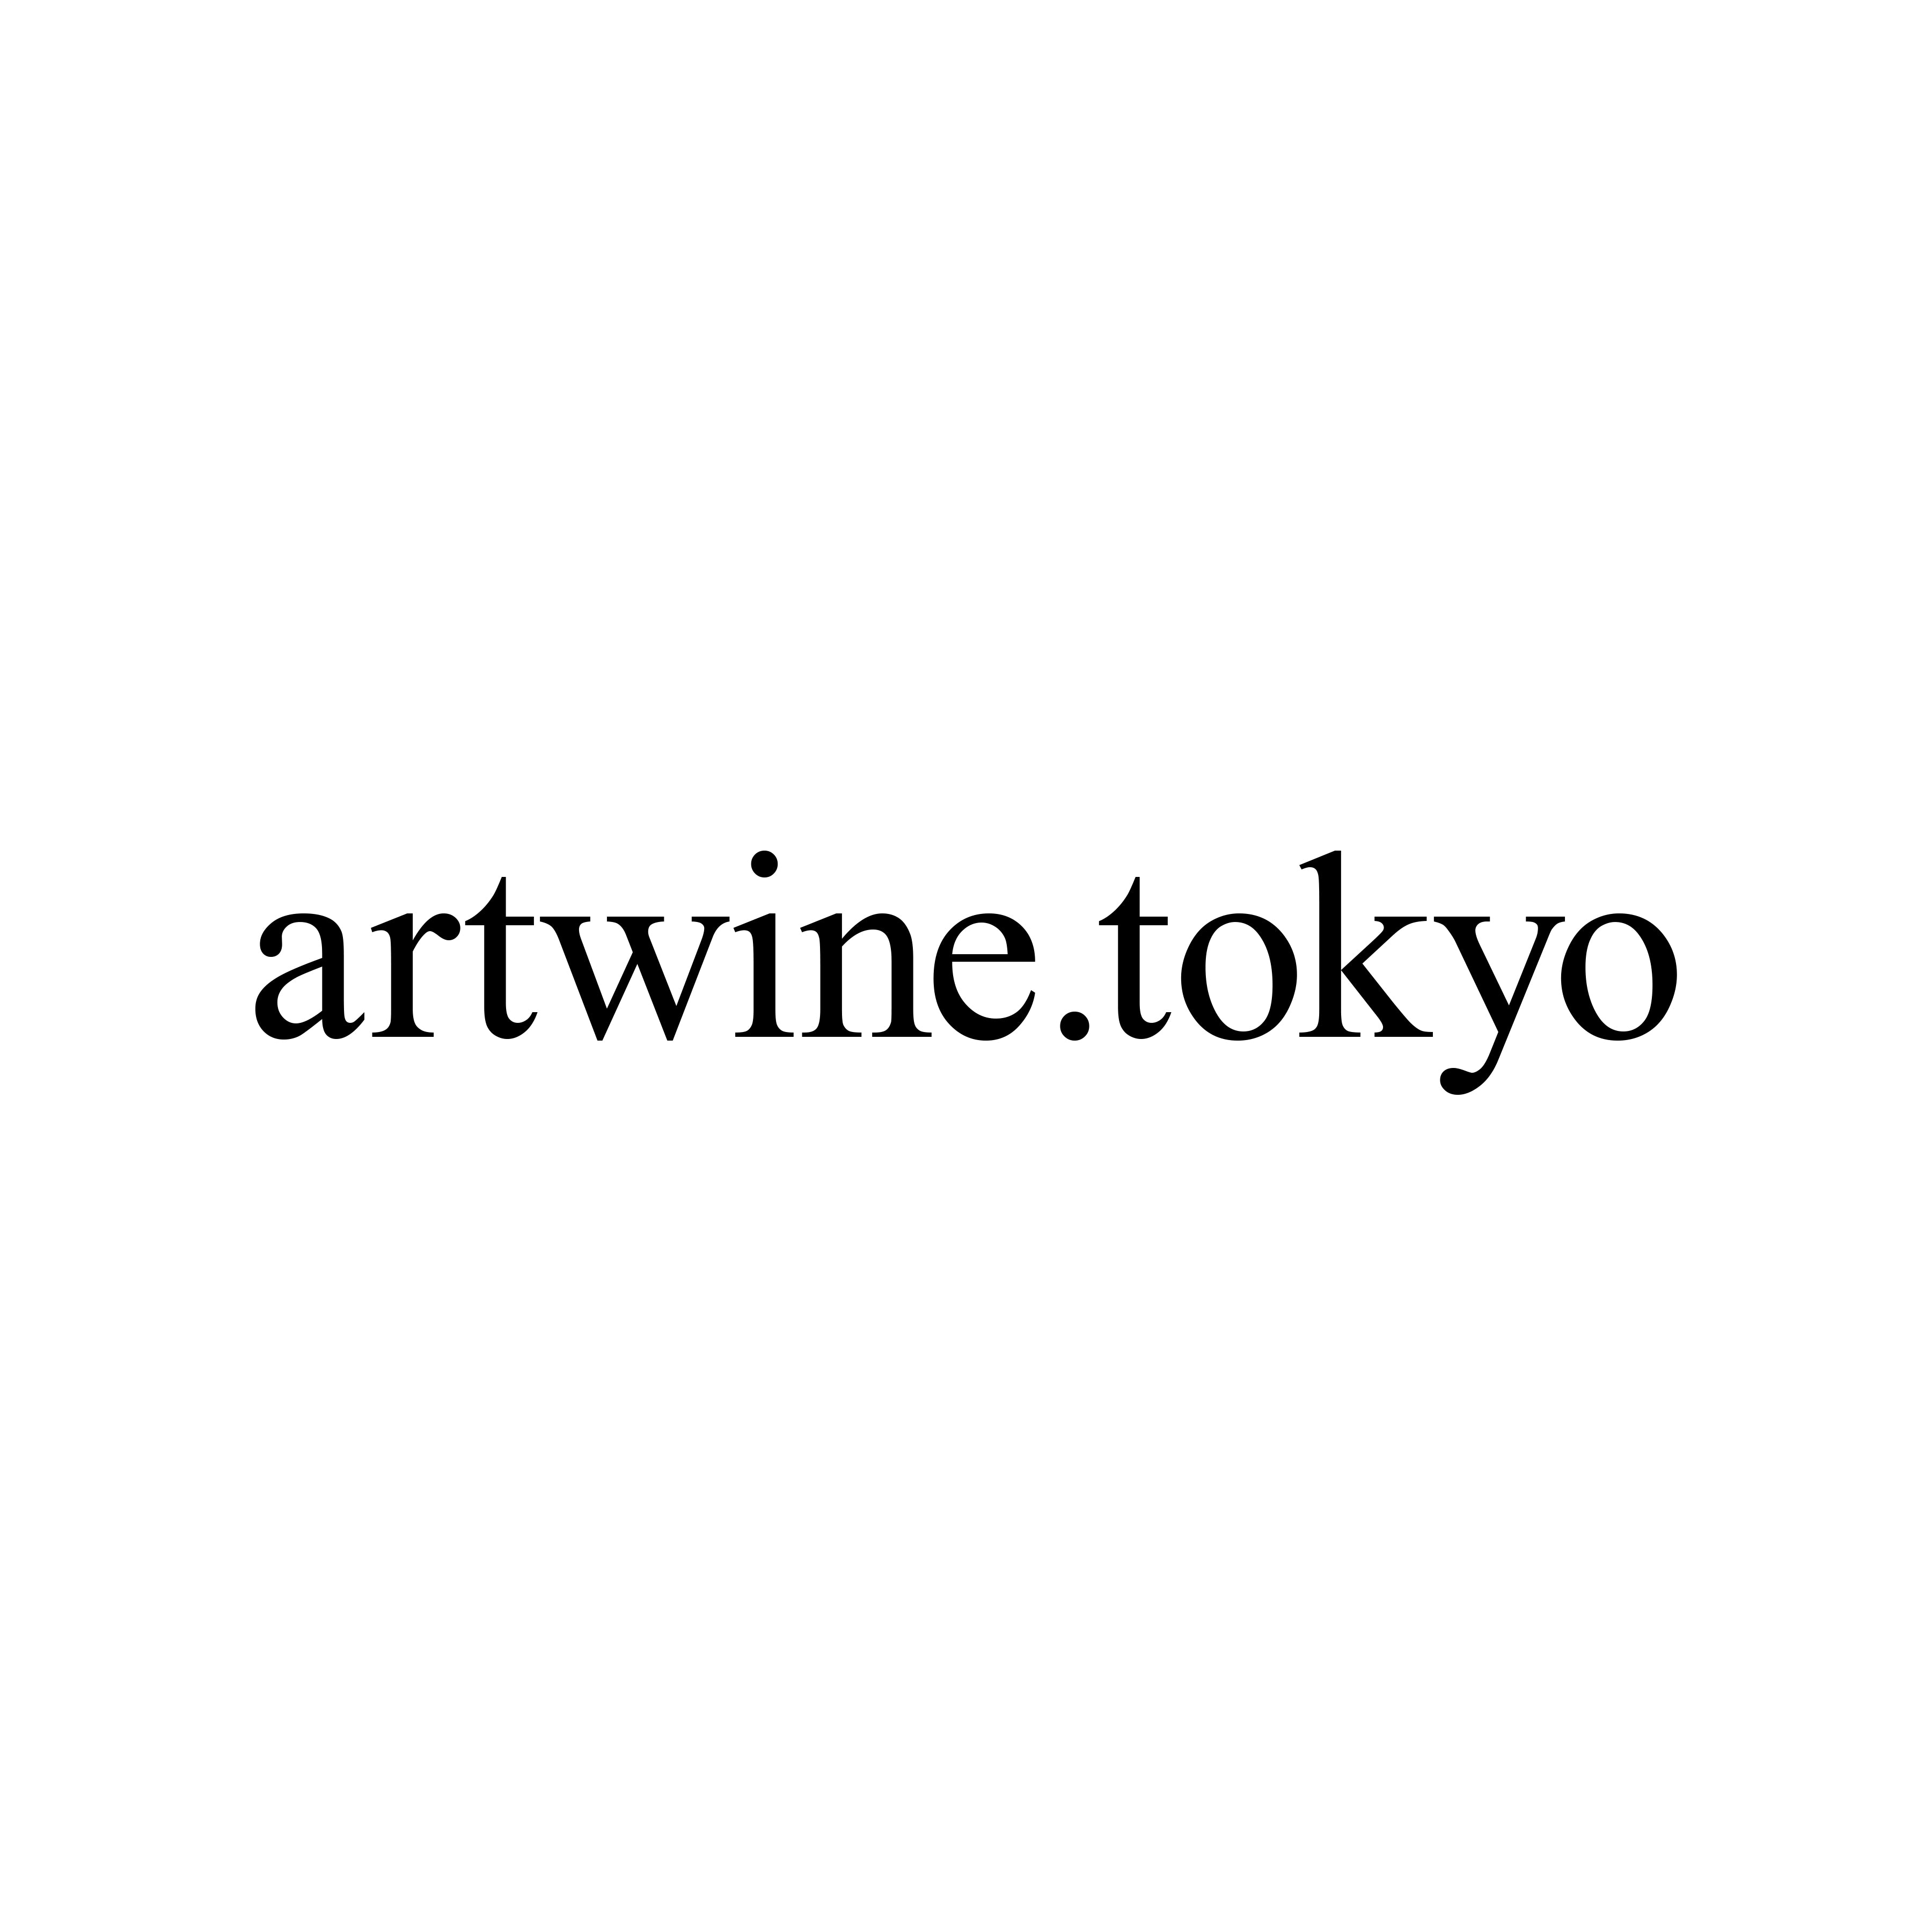 artwine.tokyo event ticket